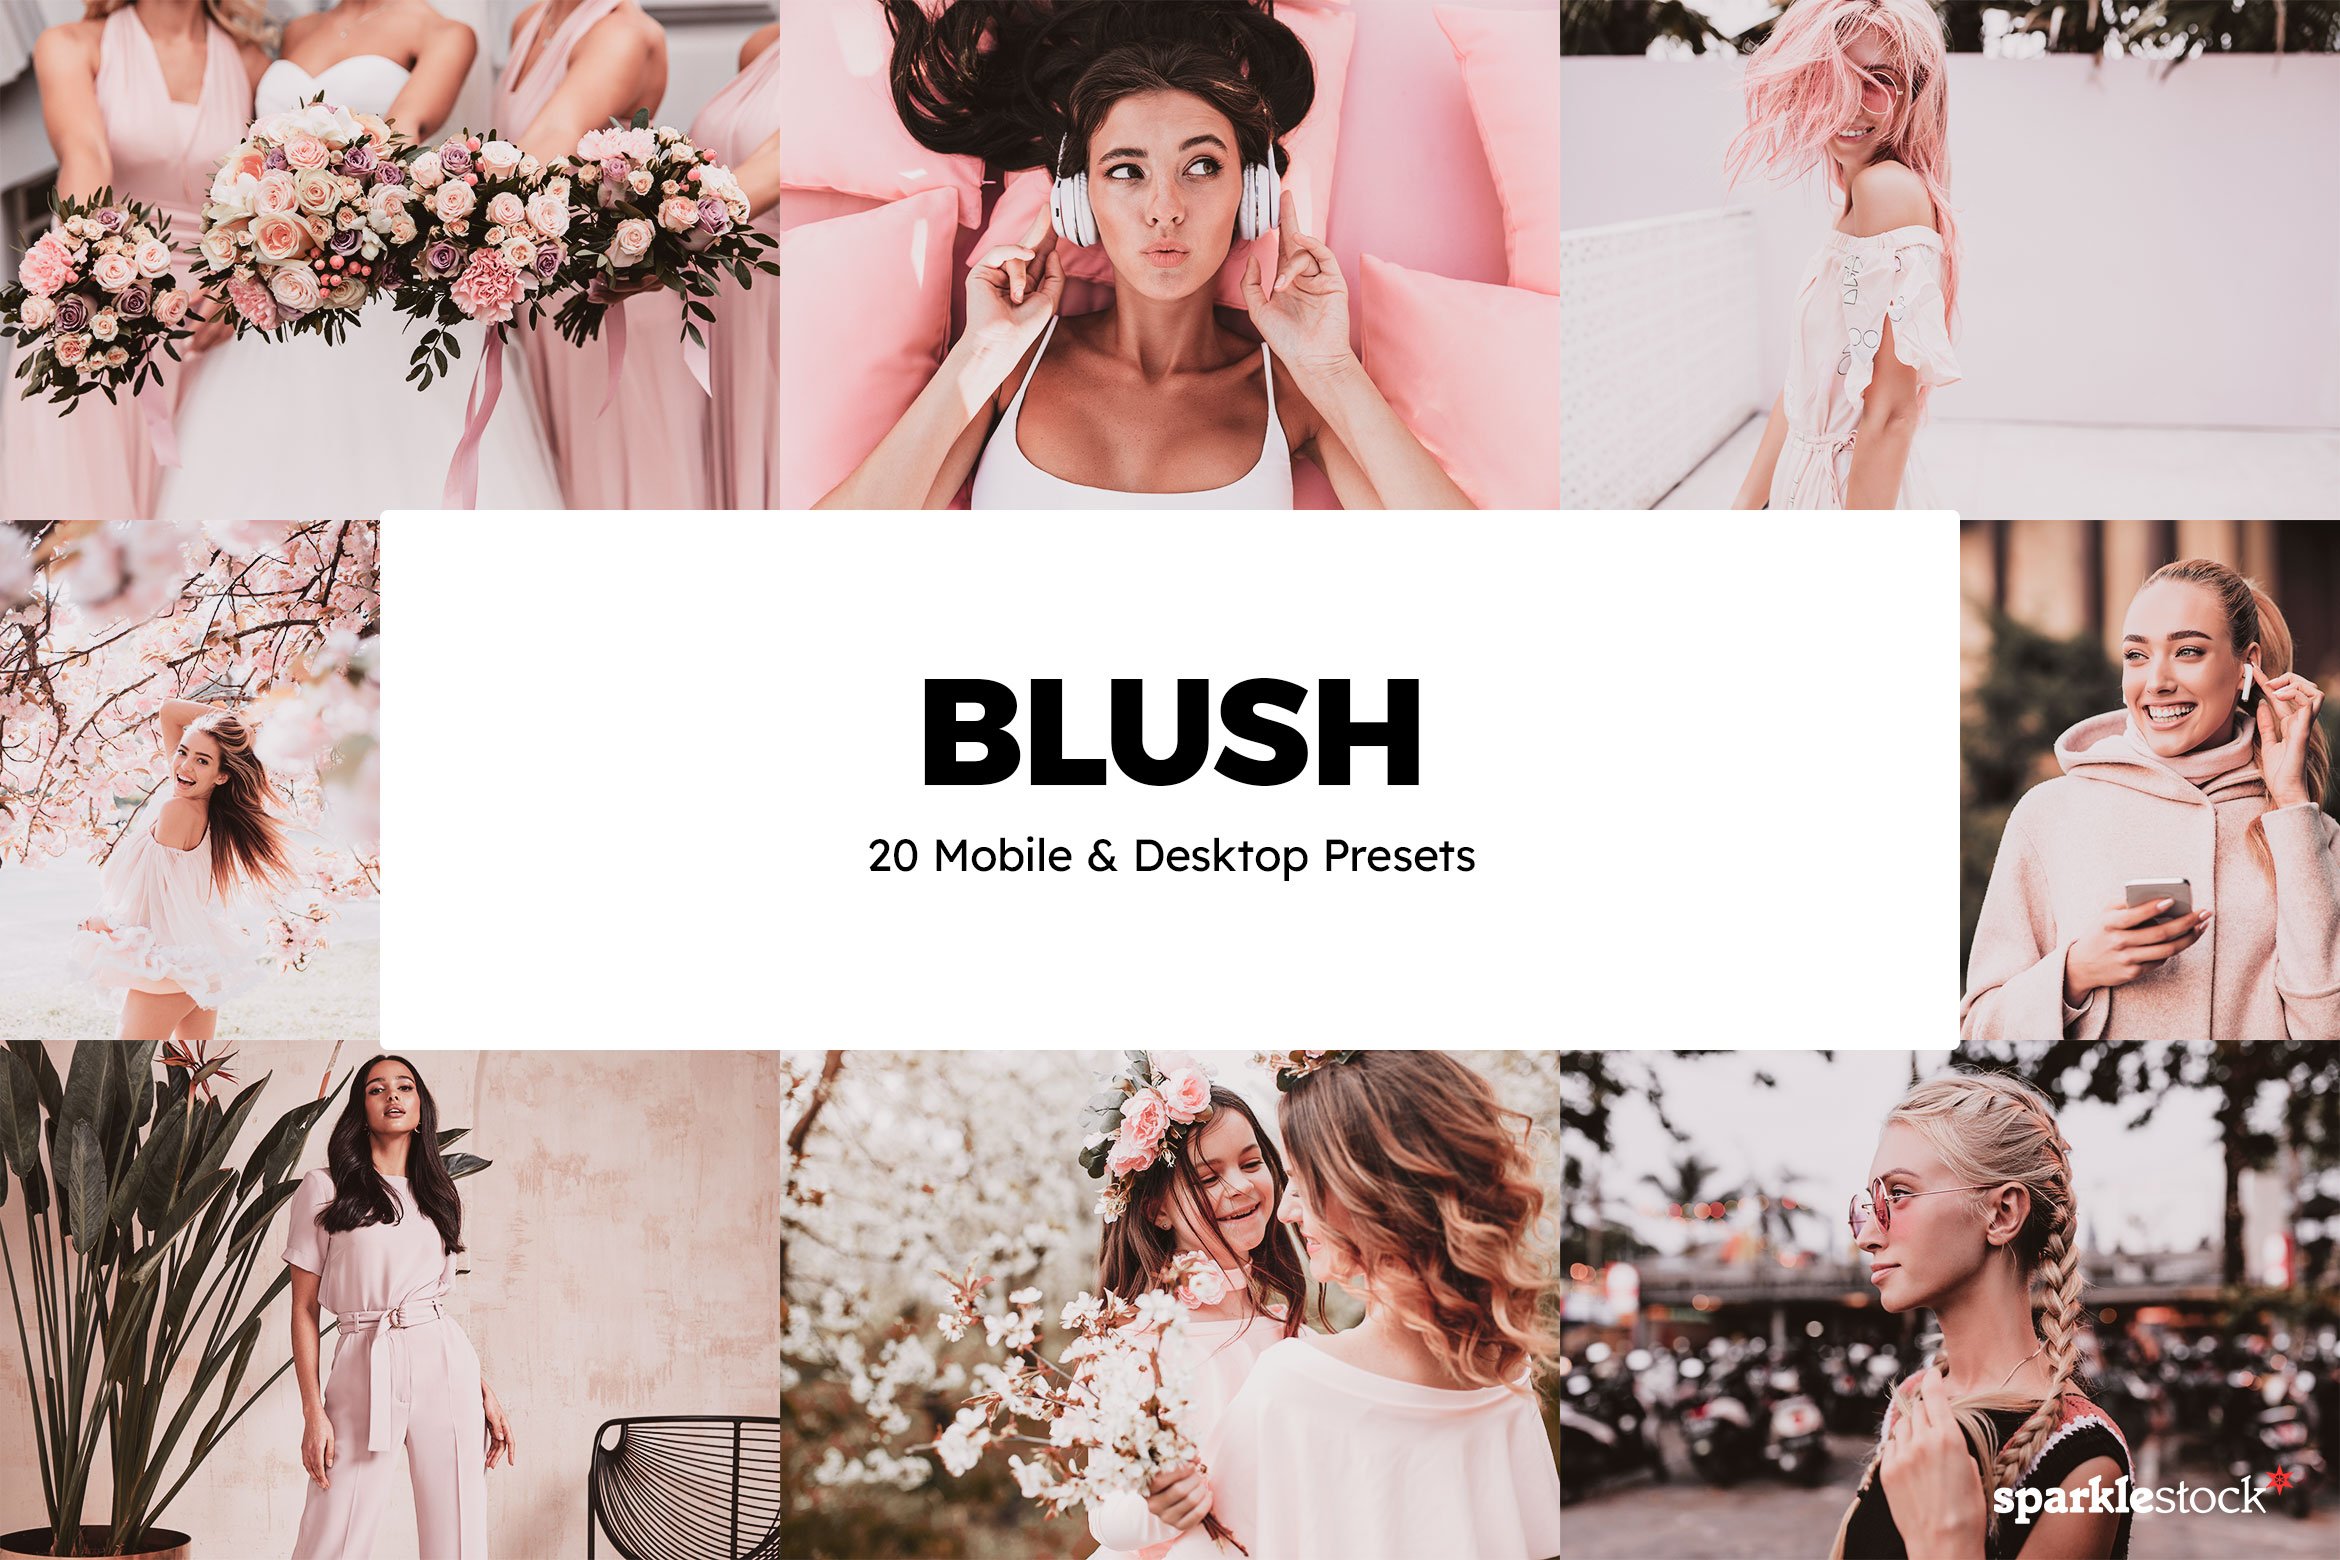 20 Blush Lightroom Presets & LUTscover image.